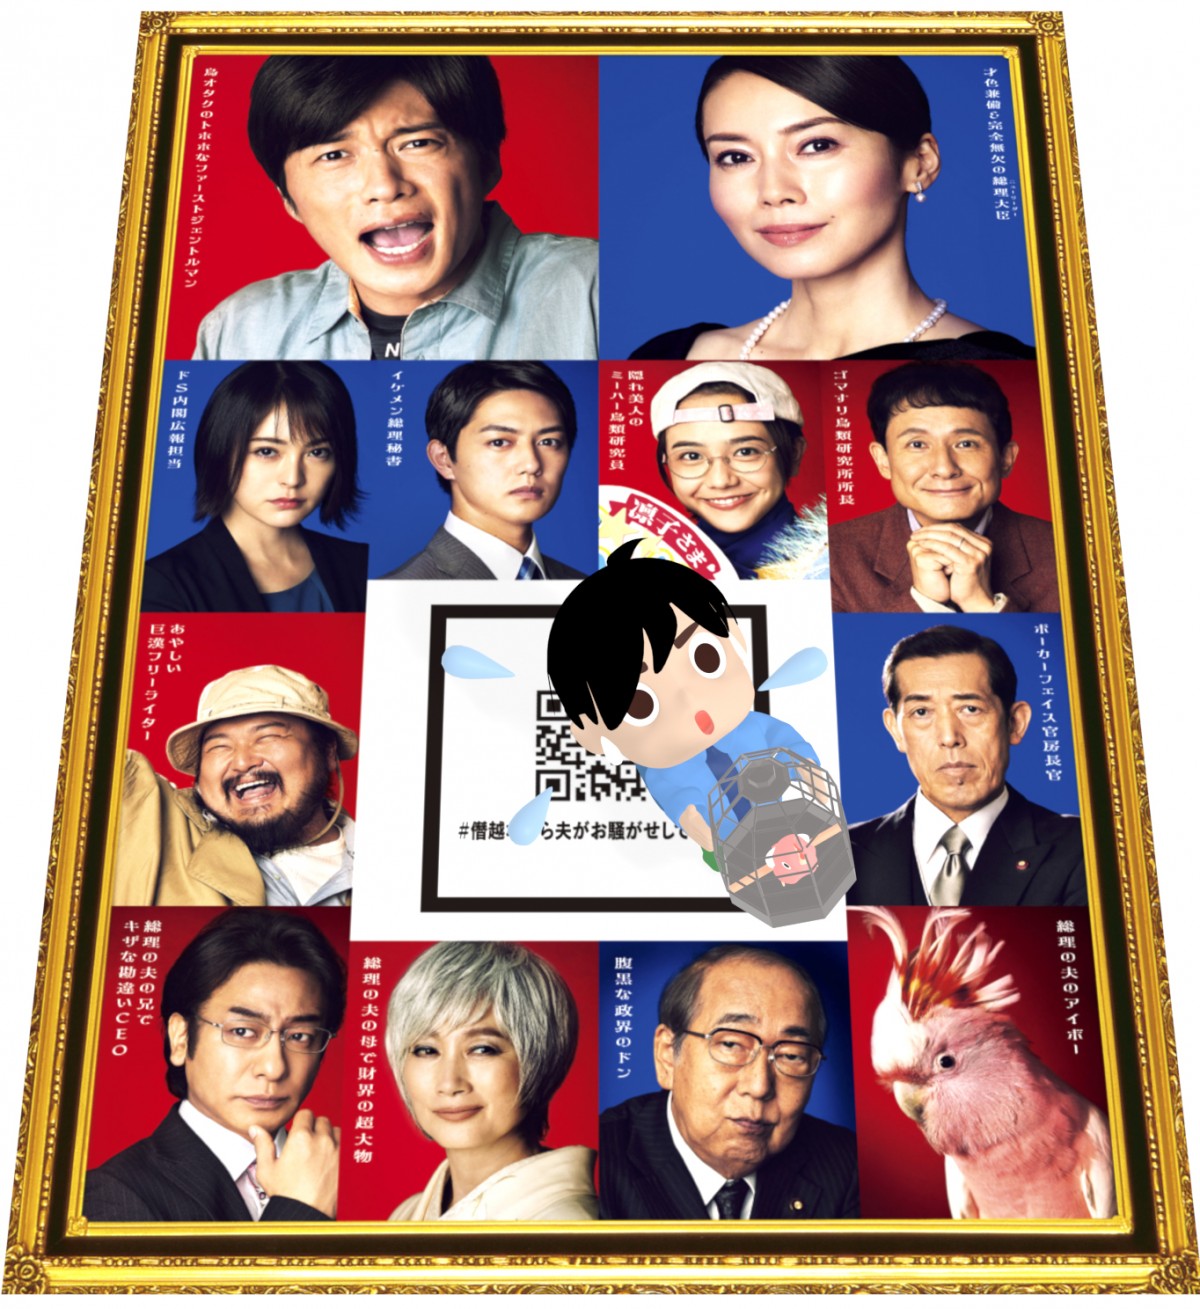 映画『総理の夫』田中圭の3Dキャラクターが動くチラシ 各地の映画館に設置へ | ORICON NEWS